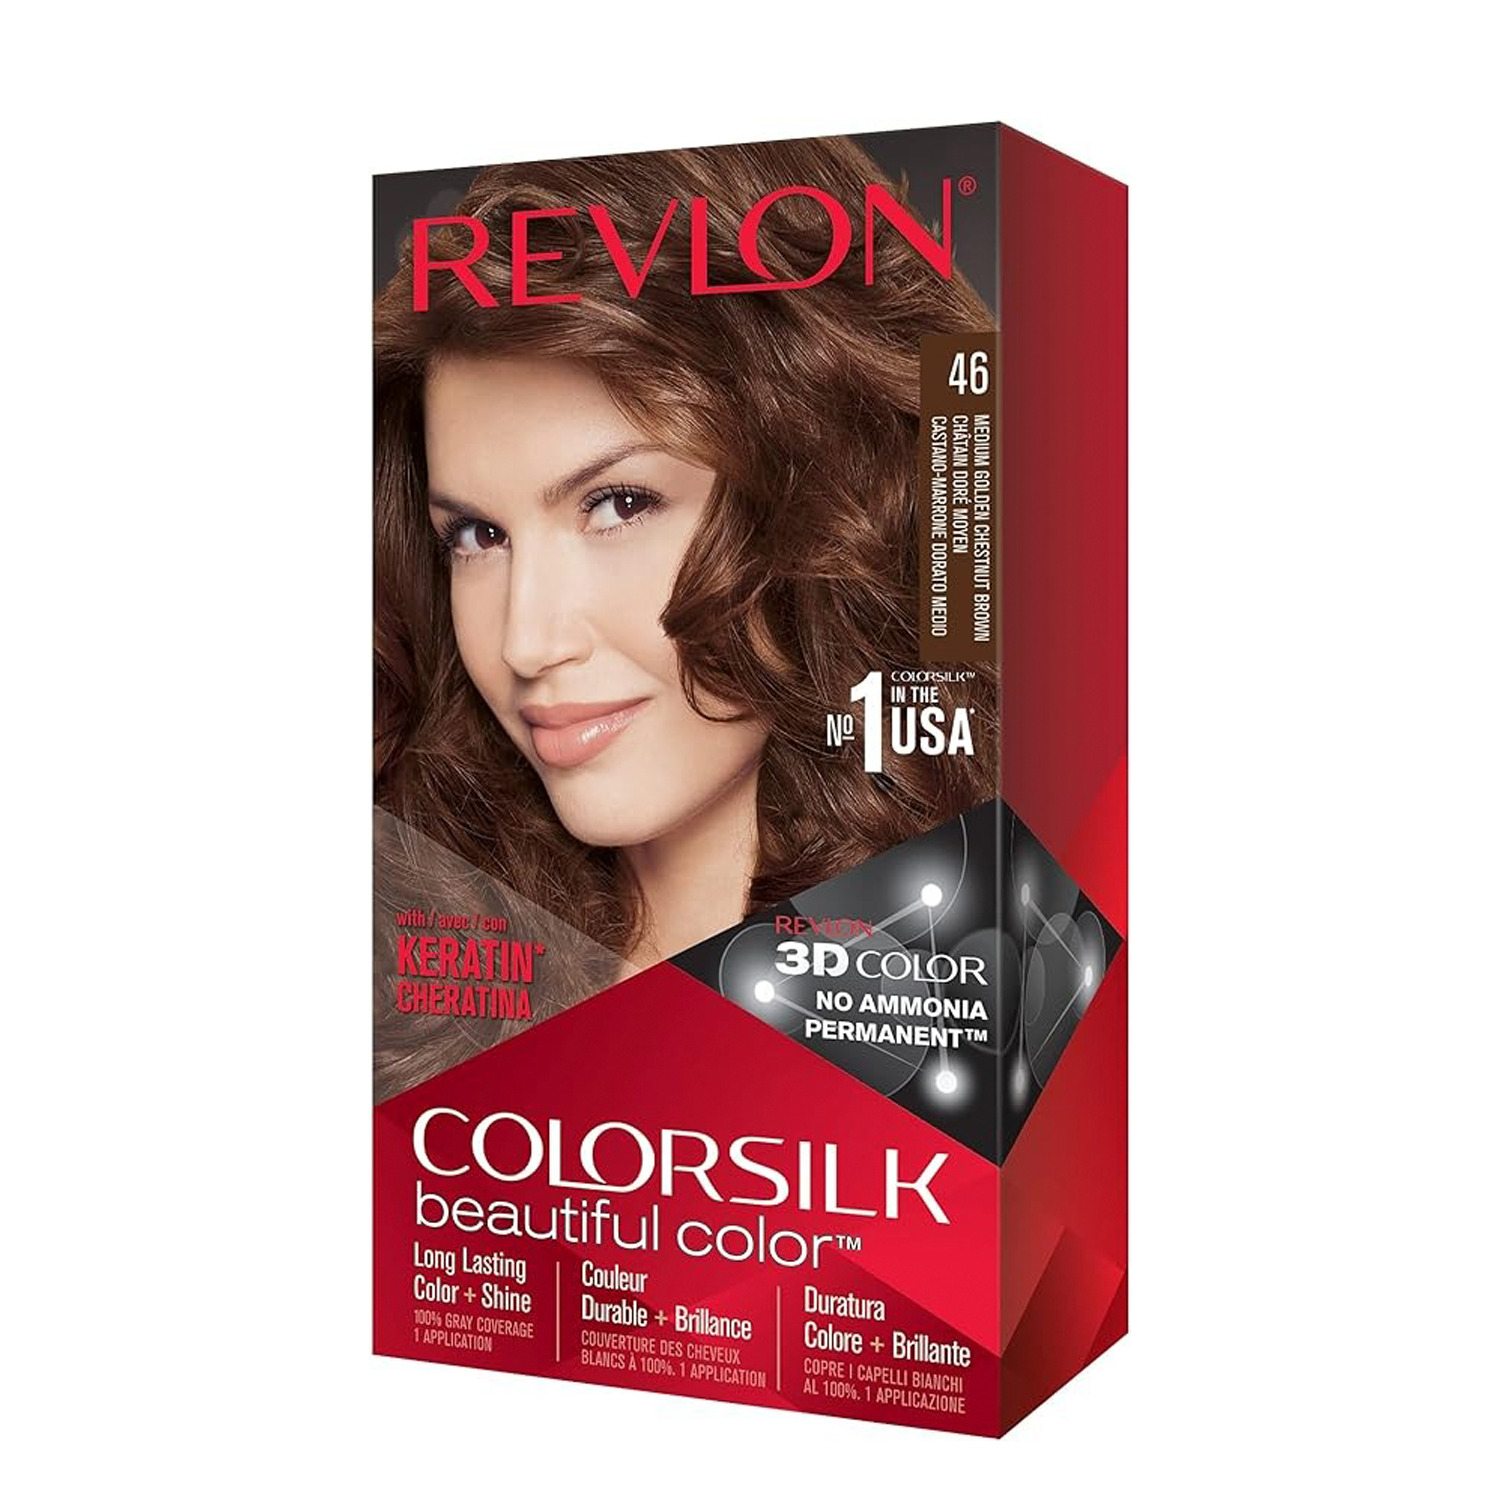 Revlon - Colorsilk Beautiful Color, permanent hair colour - 46 Medium Golden Chestnut Brown